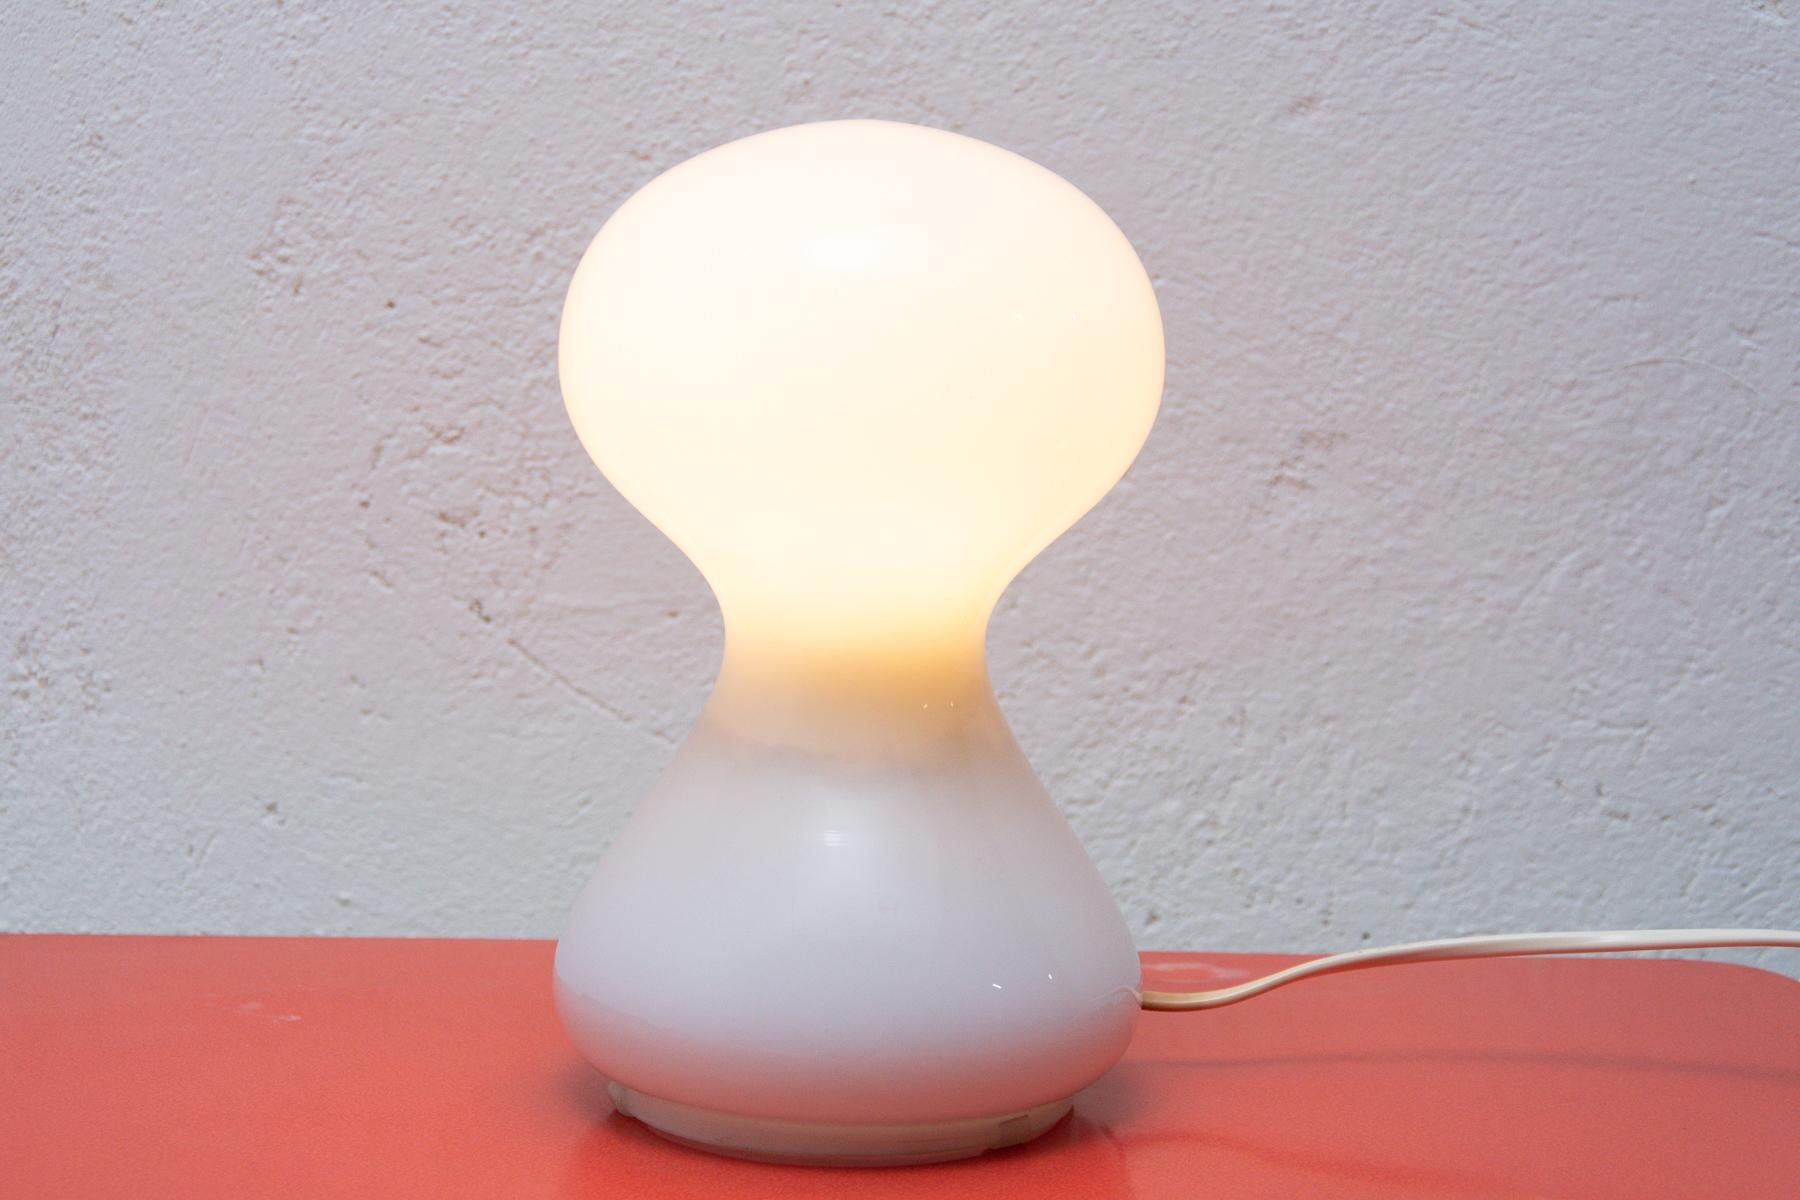 Lámpara de vidrio de color blanco lechoso, fue diseñada por Ivan Jakeš a principios de la década de 1970 y producida por OS Valašské Mezirící. La lámpara tiene una luz tenue muy agradable y también puede utilizarse como interesante decoración. La